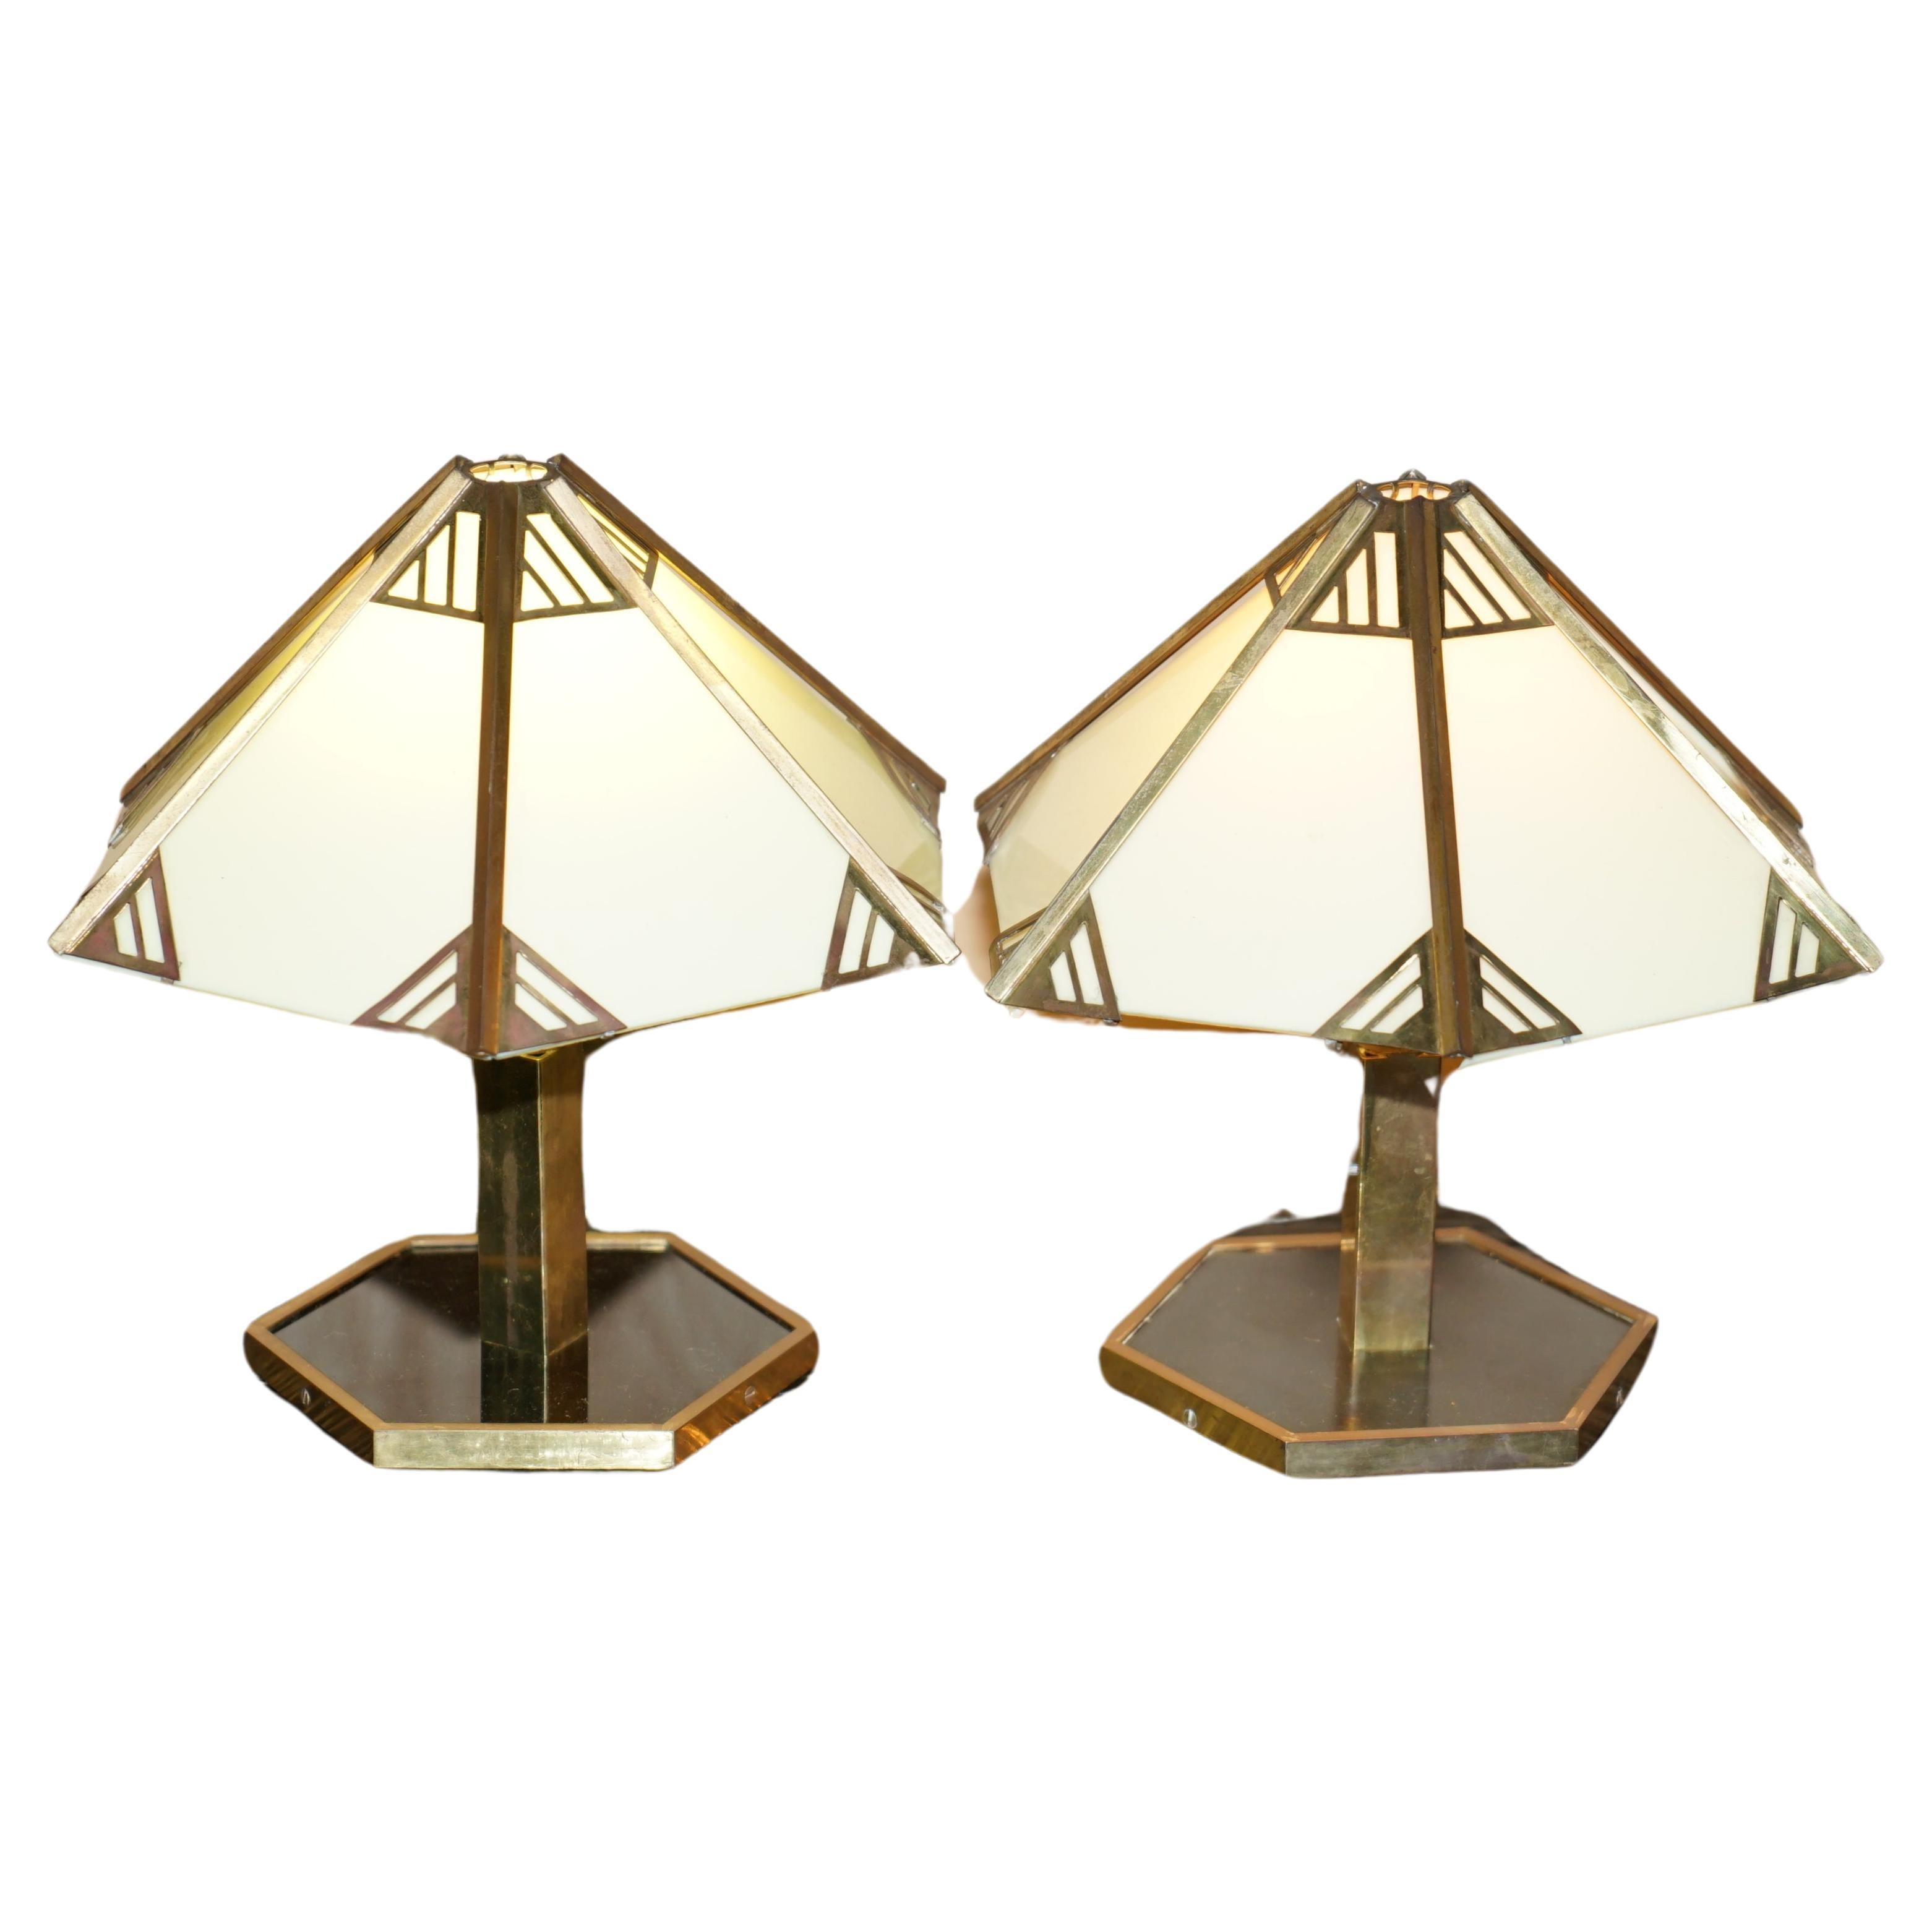 Nous sommes ravis d'offrir à la vente cette superbe paire de lampes de table Art Déco en laiton et Lucite datant des années 1930-1940.

Une très belle paire de lampes de table italiennes modernes du milieu du siècle dernier, bien fabriquées et